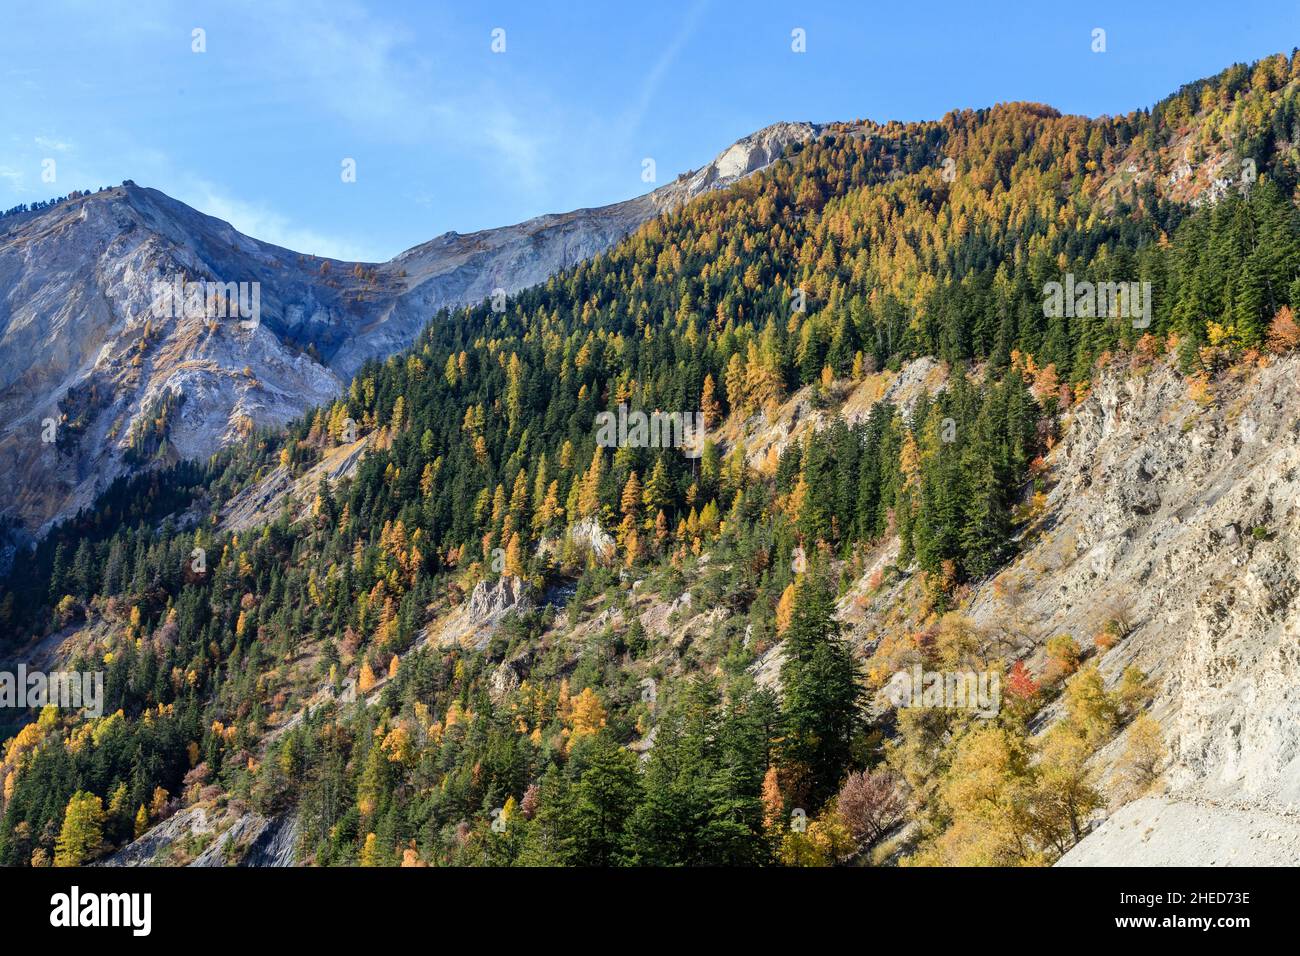 Francia, Altos Alpes, Crots, Bosque del estado de Boscodon en otoño, vista desde el Belvedere de Bragousse, abeto de plata europeo (Abies alba) y larc europeo Foto de stock